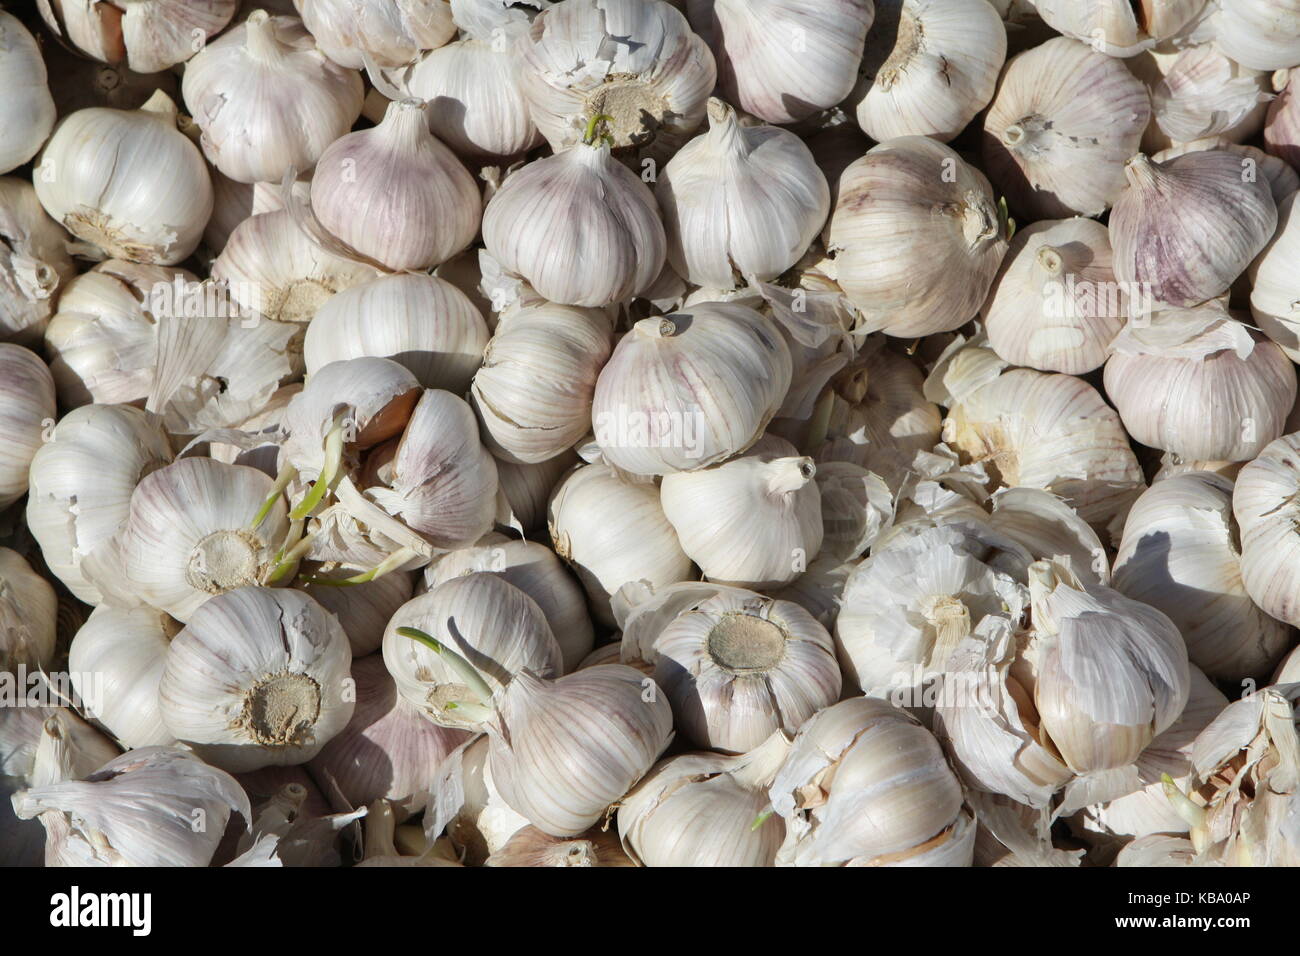 Garlic - Knoblauch auf einem Markt Stock Photo